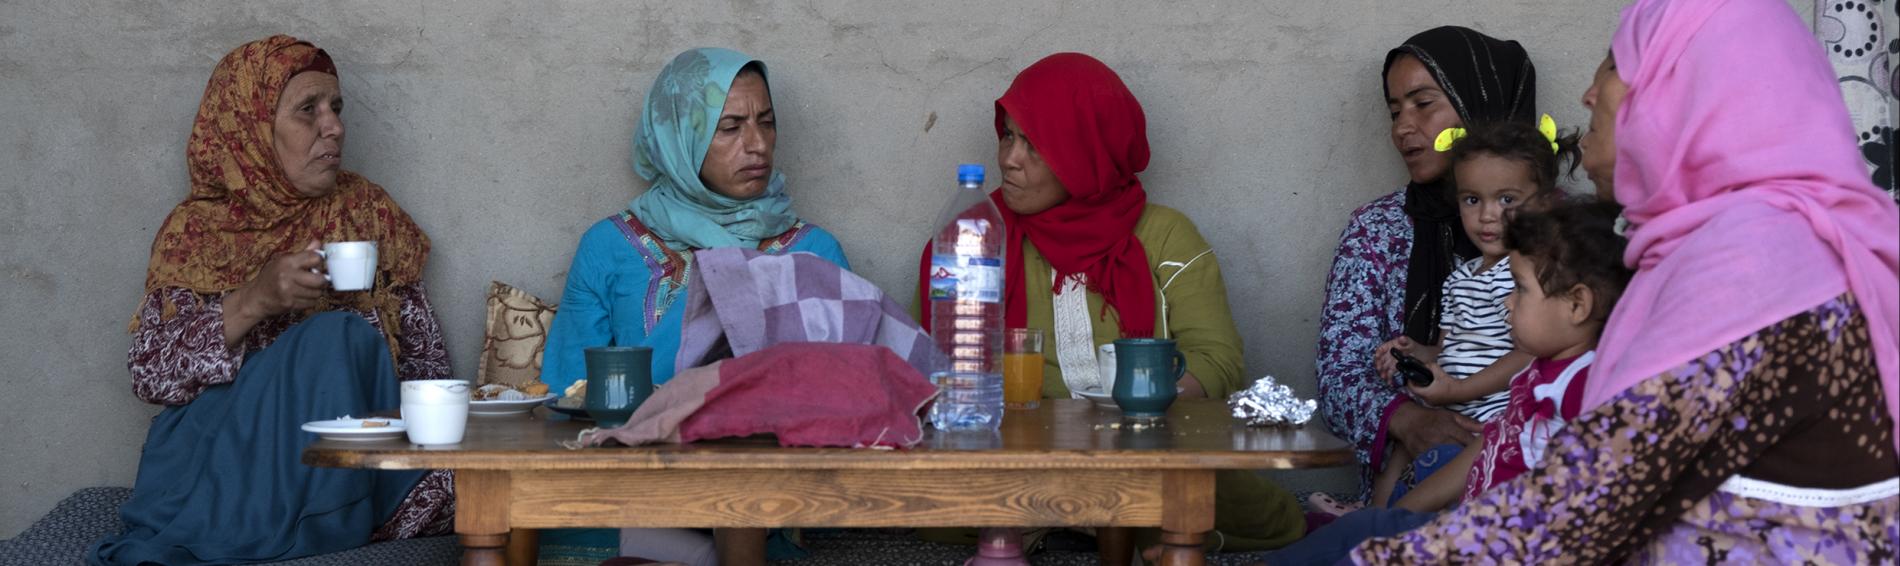 Cinq femmes à l'extérieur d'une maison, en Tunisie, en habits colorés. Elles sont assises autour d'une table sur laquelle se trouve se l'eau et du café.